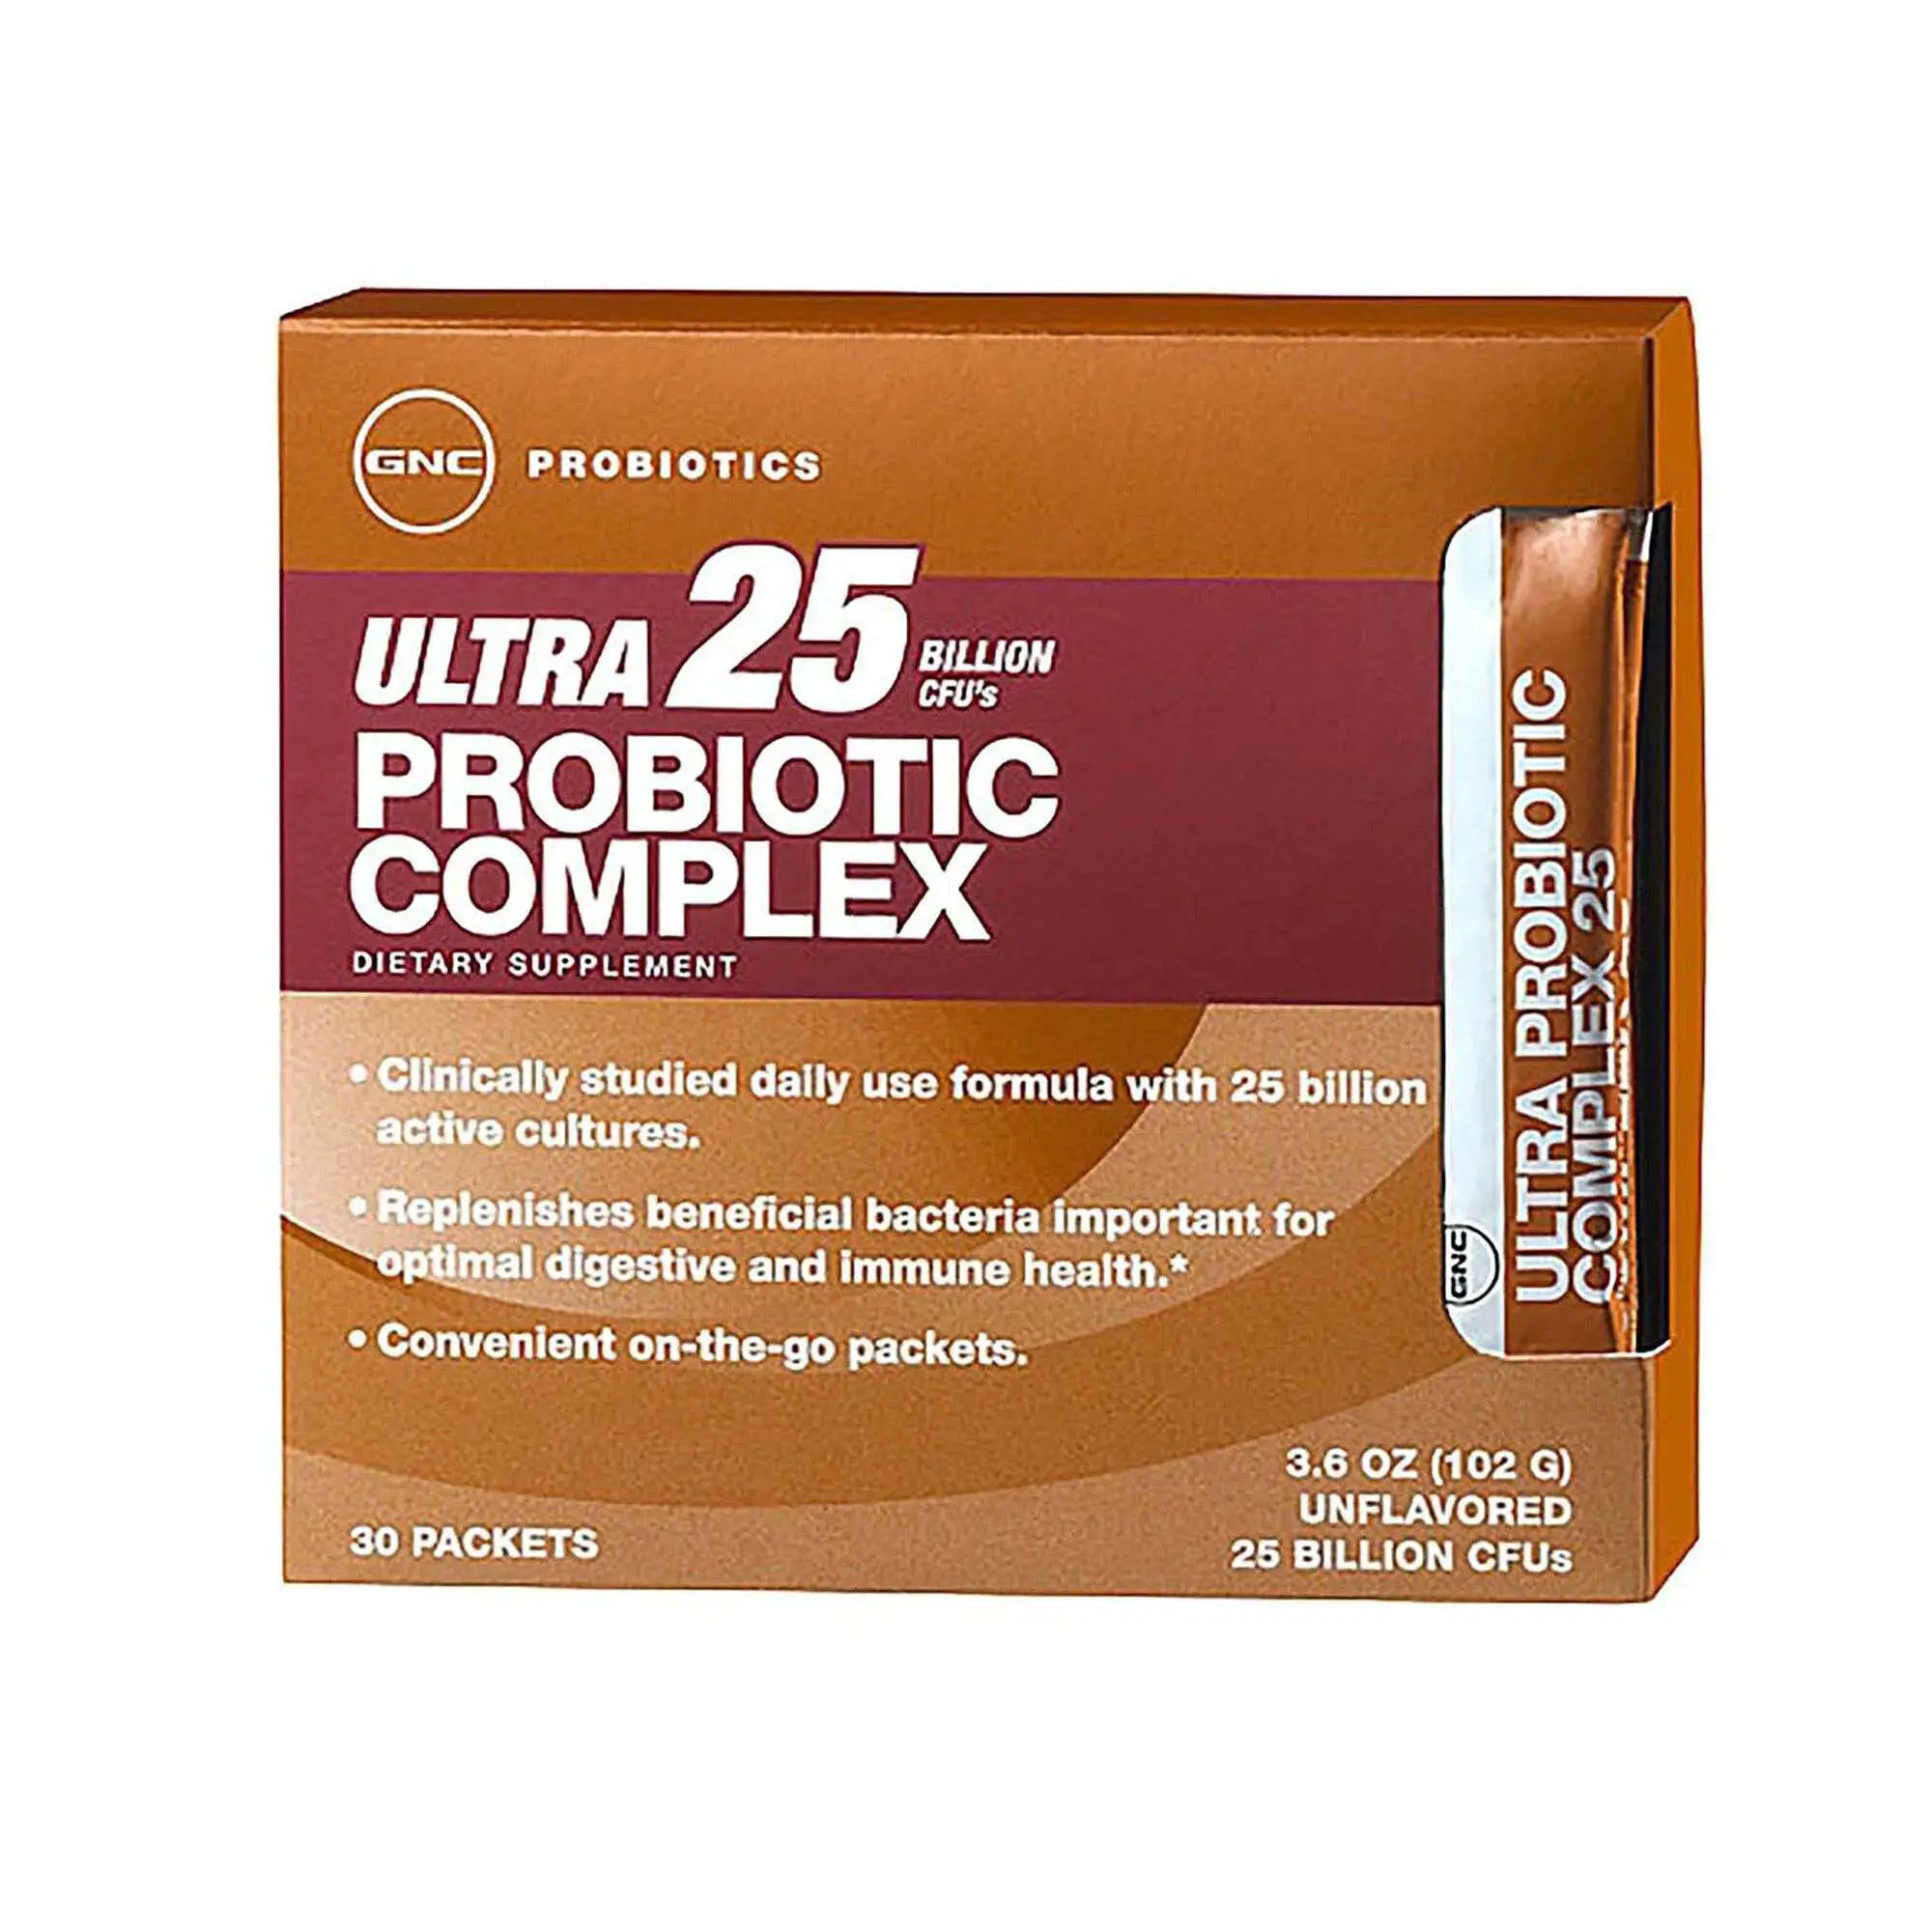 GNC Ultra 25 Probiotic Complex